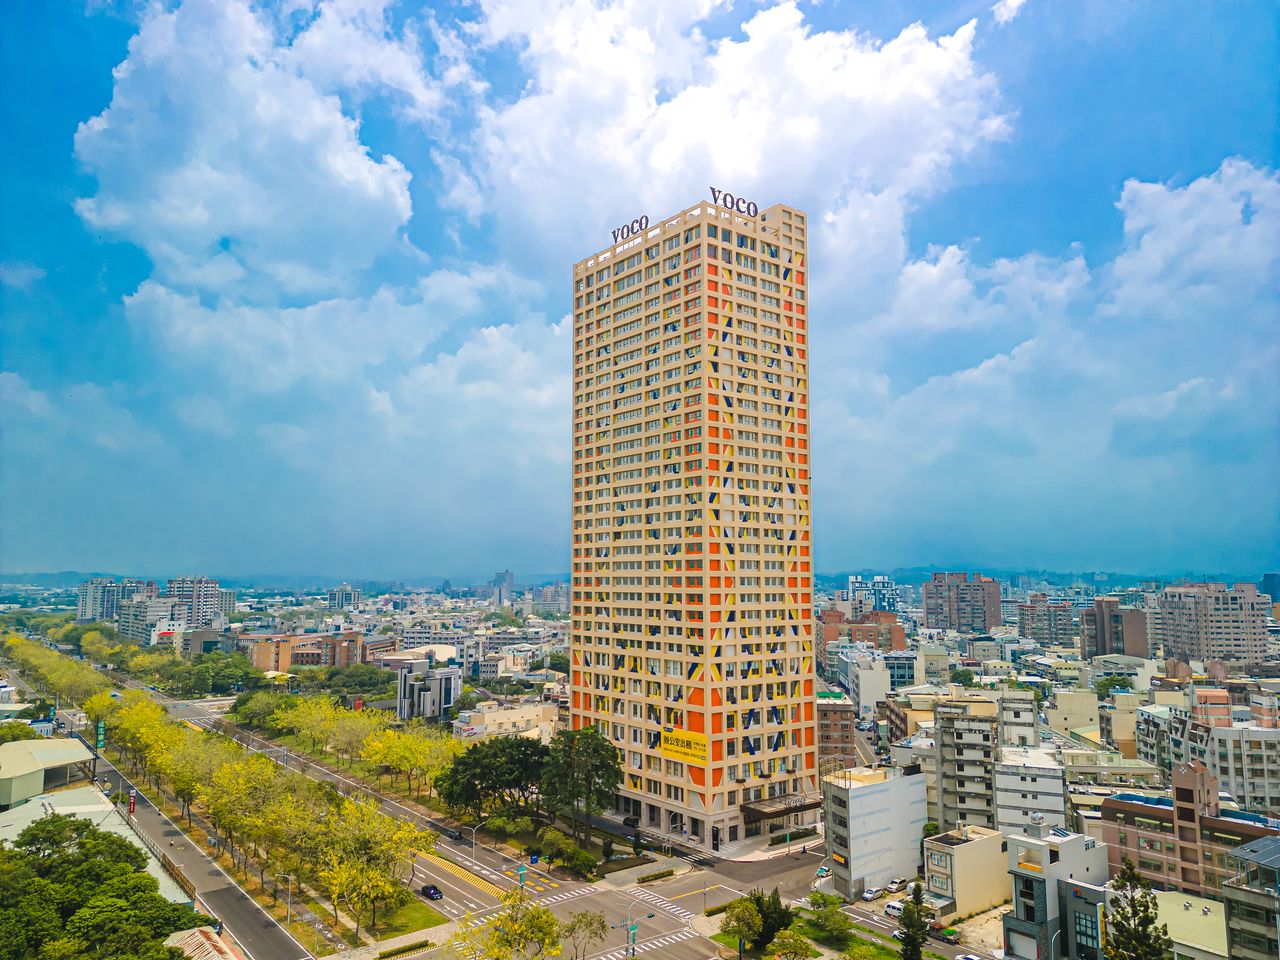 「嘉義福容voco酒店」為雲嘉地區最高樓也被喻為「嘉義101」。